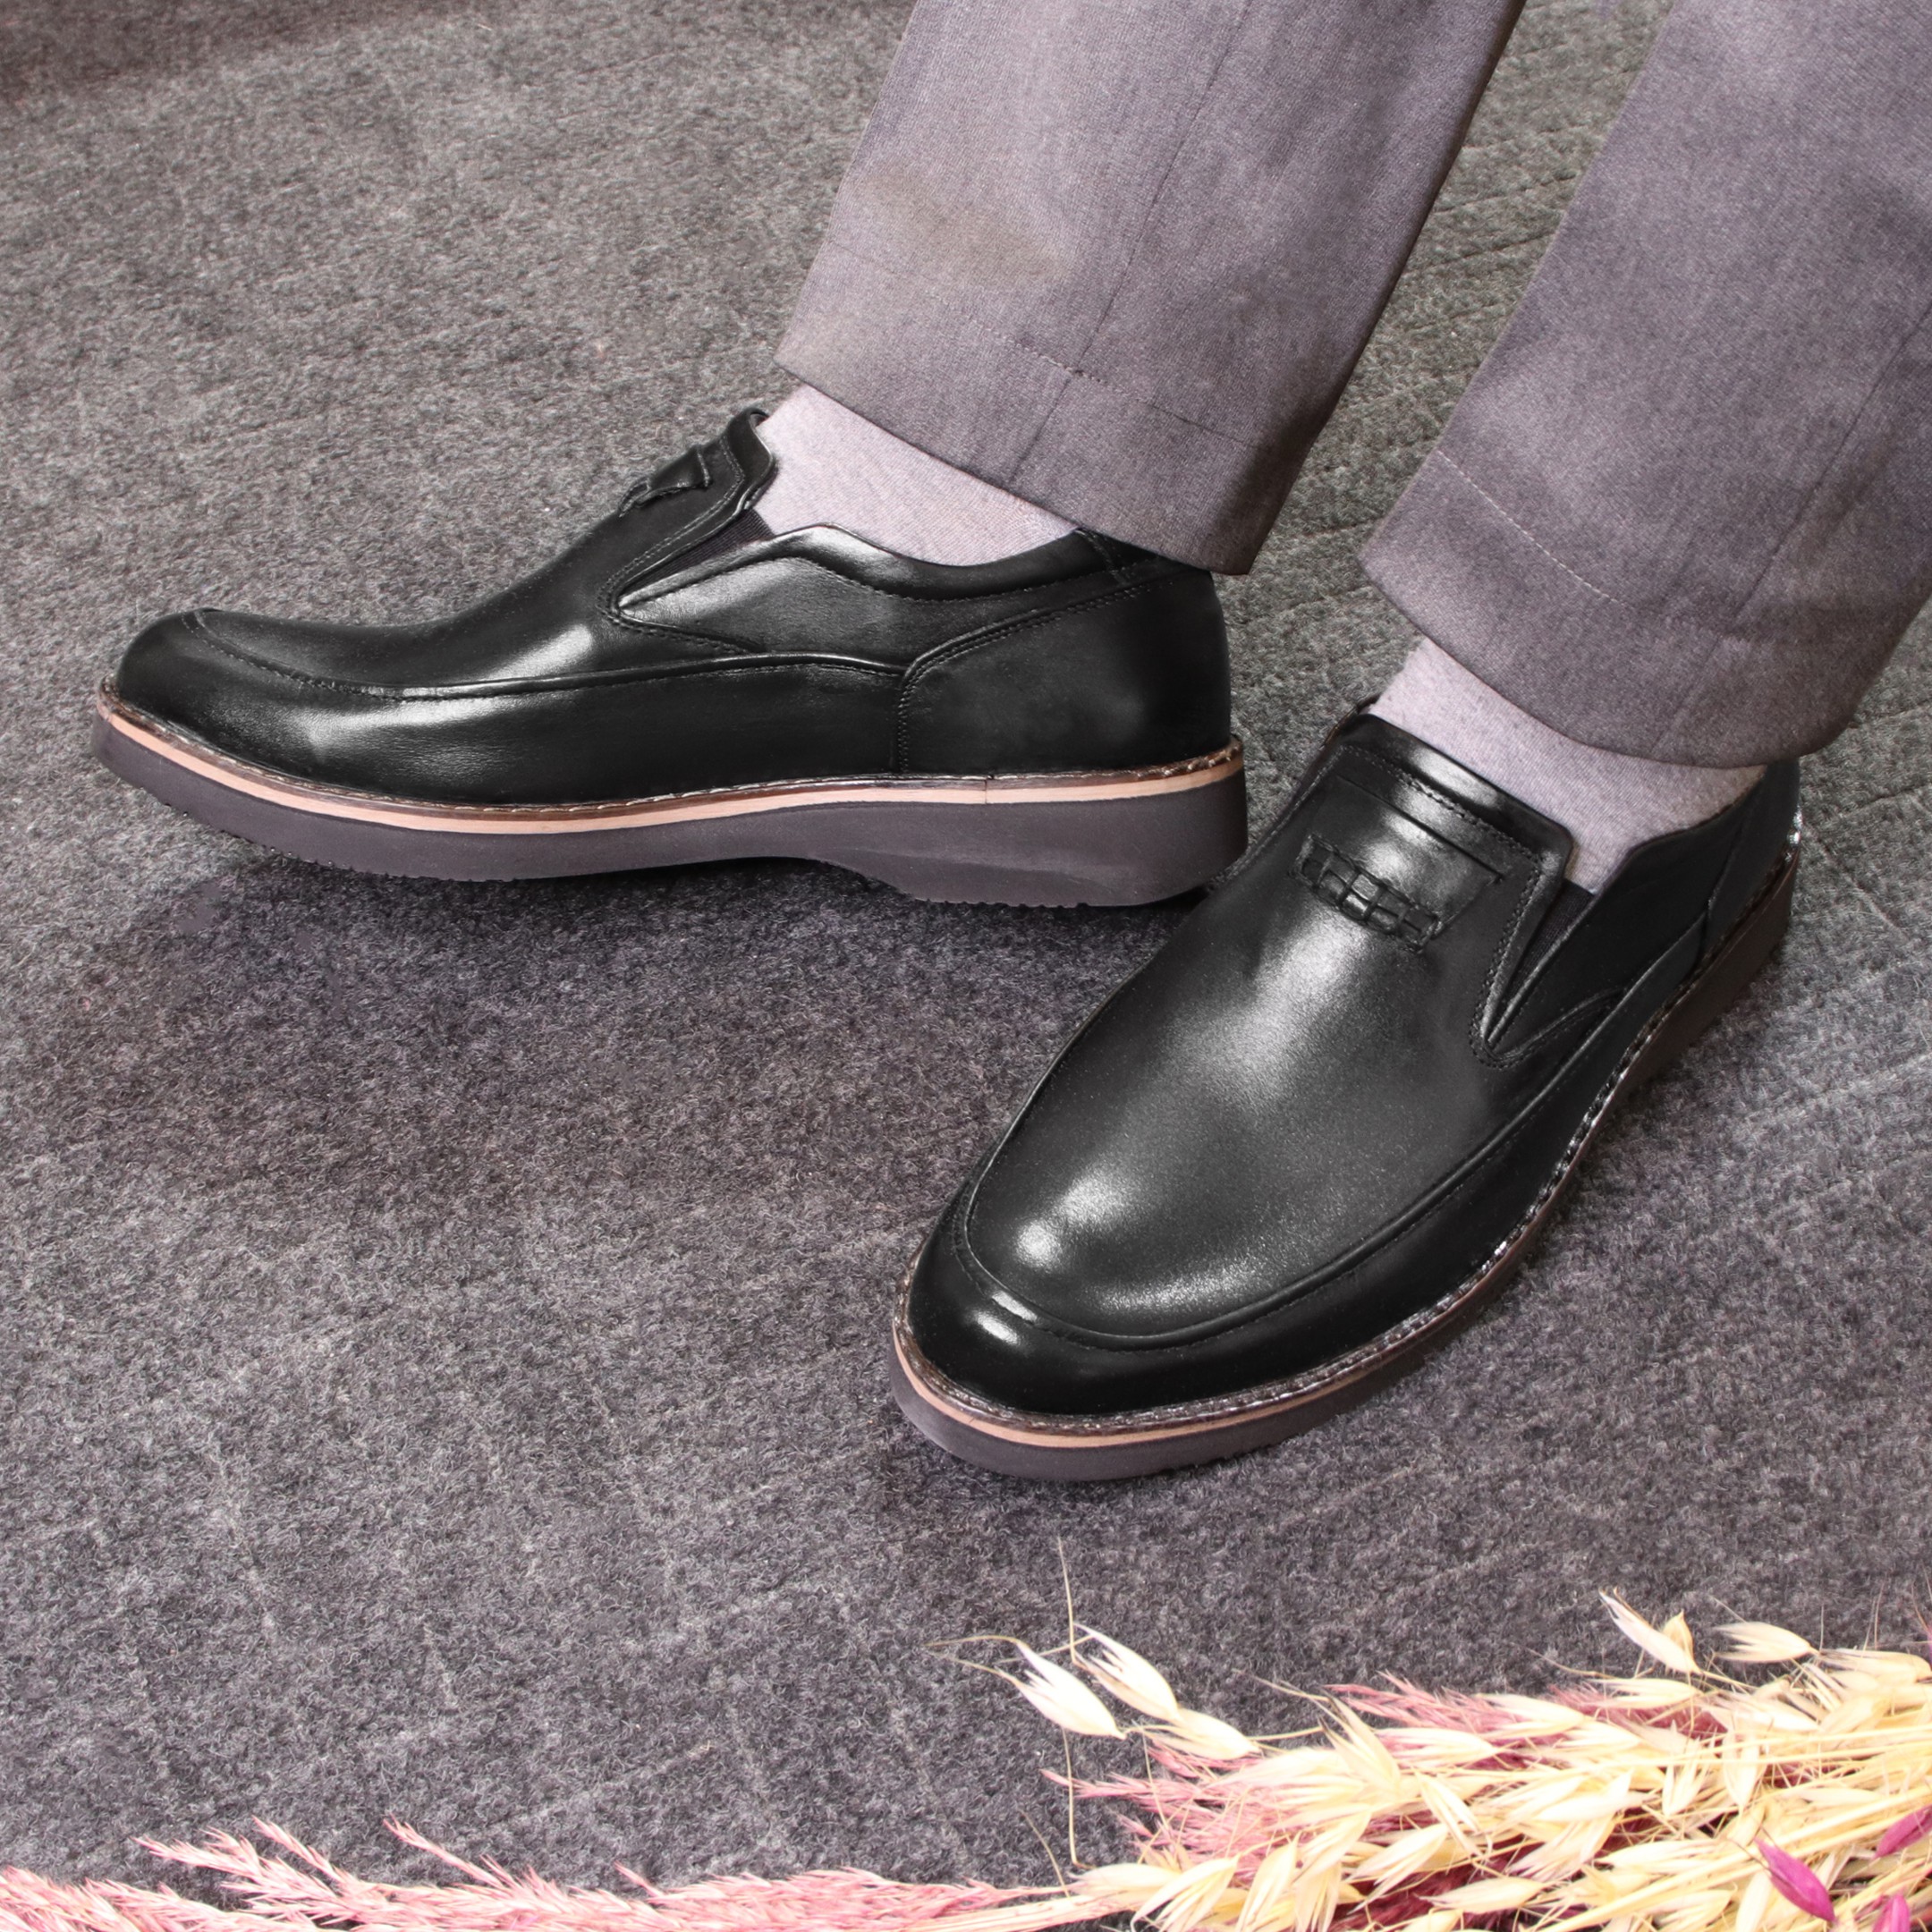 خرید آنلاین کفش طبی رسمی مردانه توگو مدل فاخر رویه بافت کد 01